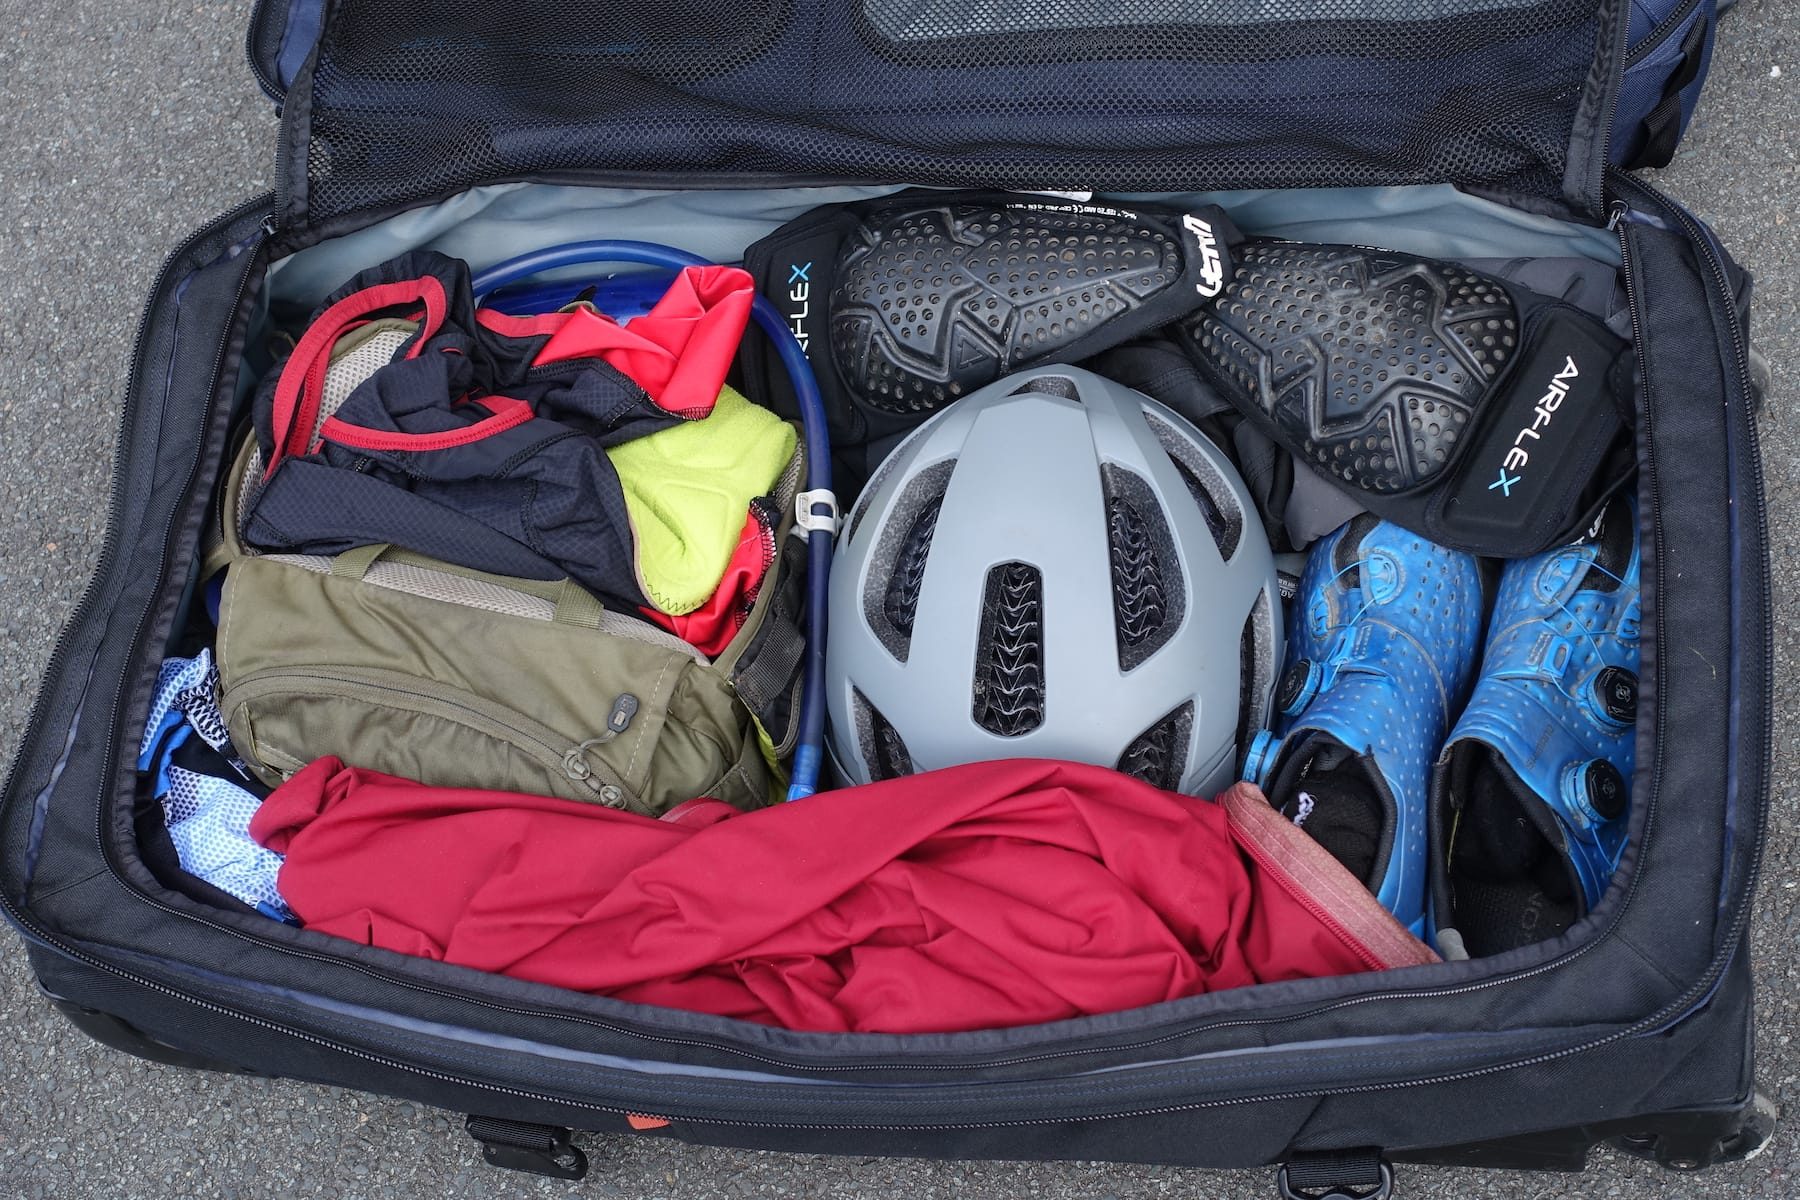 dakine bag luggage shoes helmet knee pads apparel travel